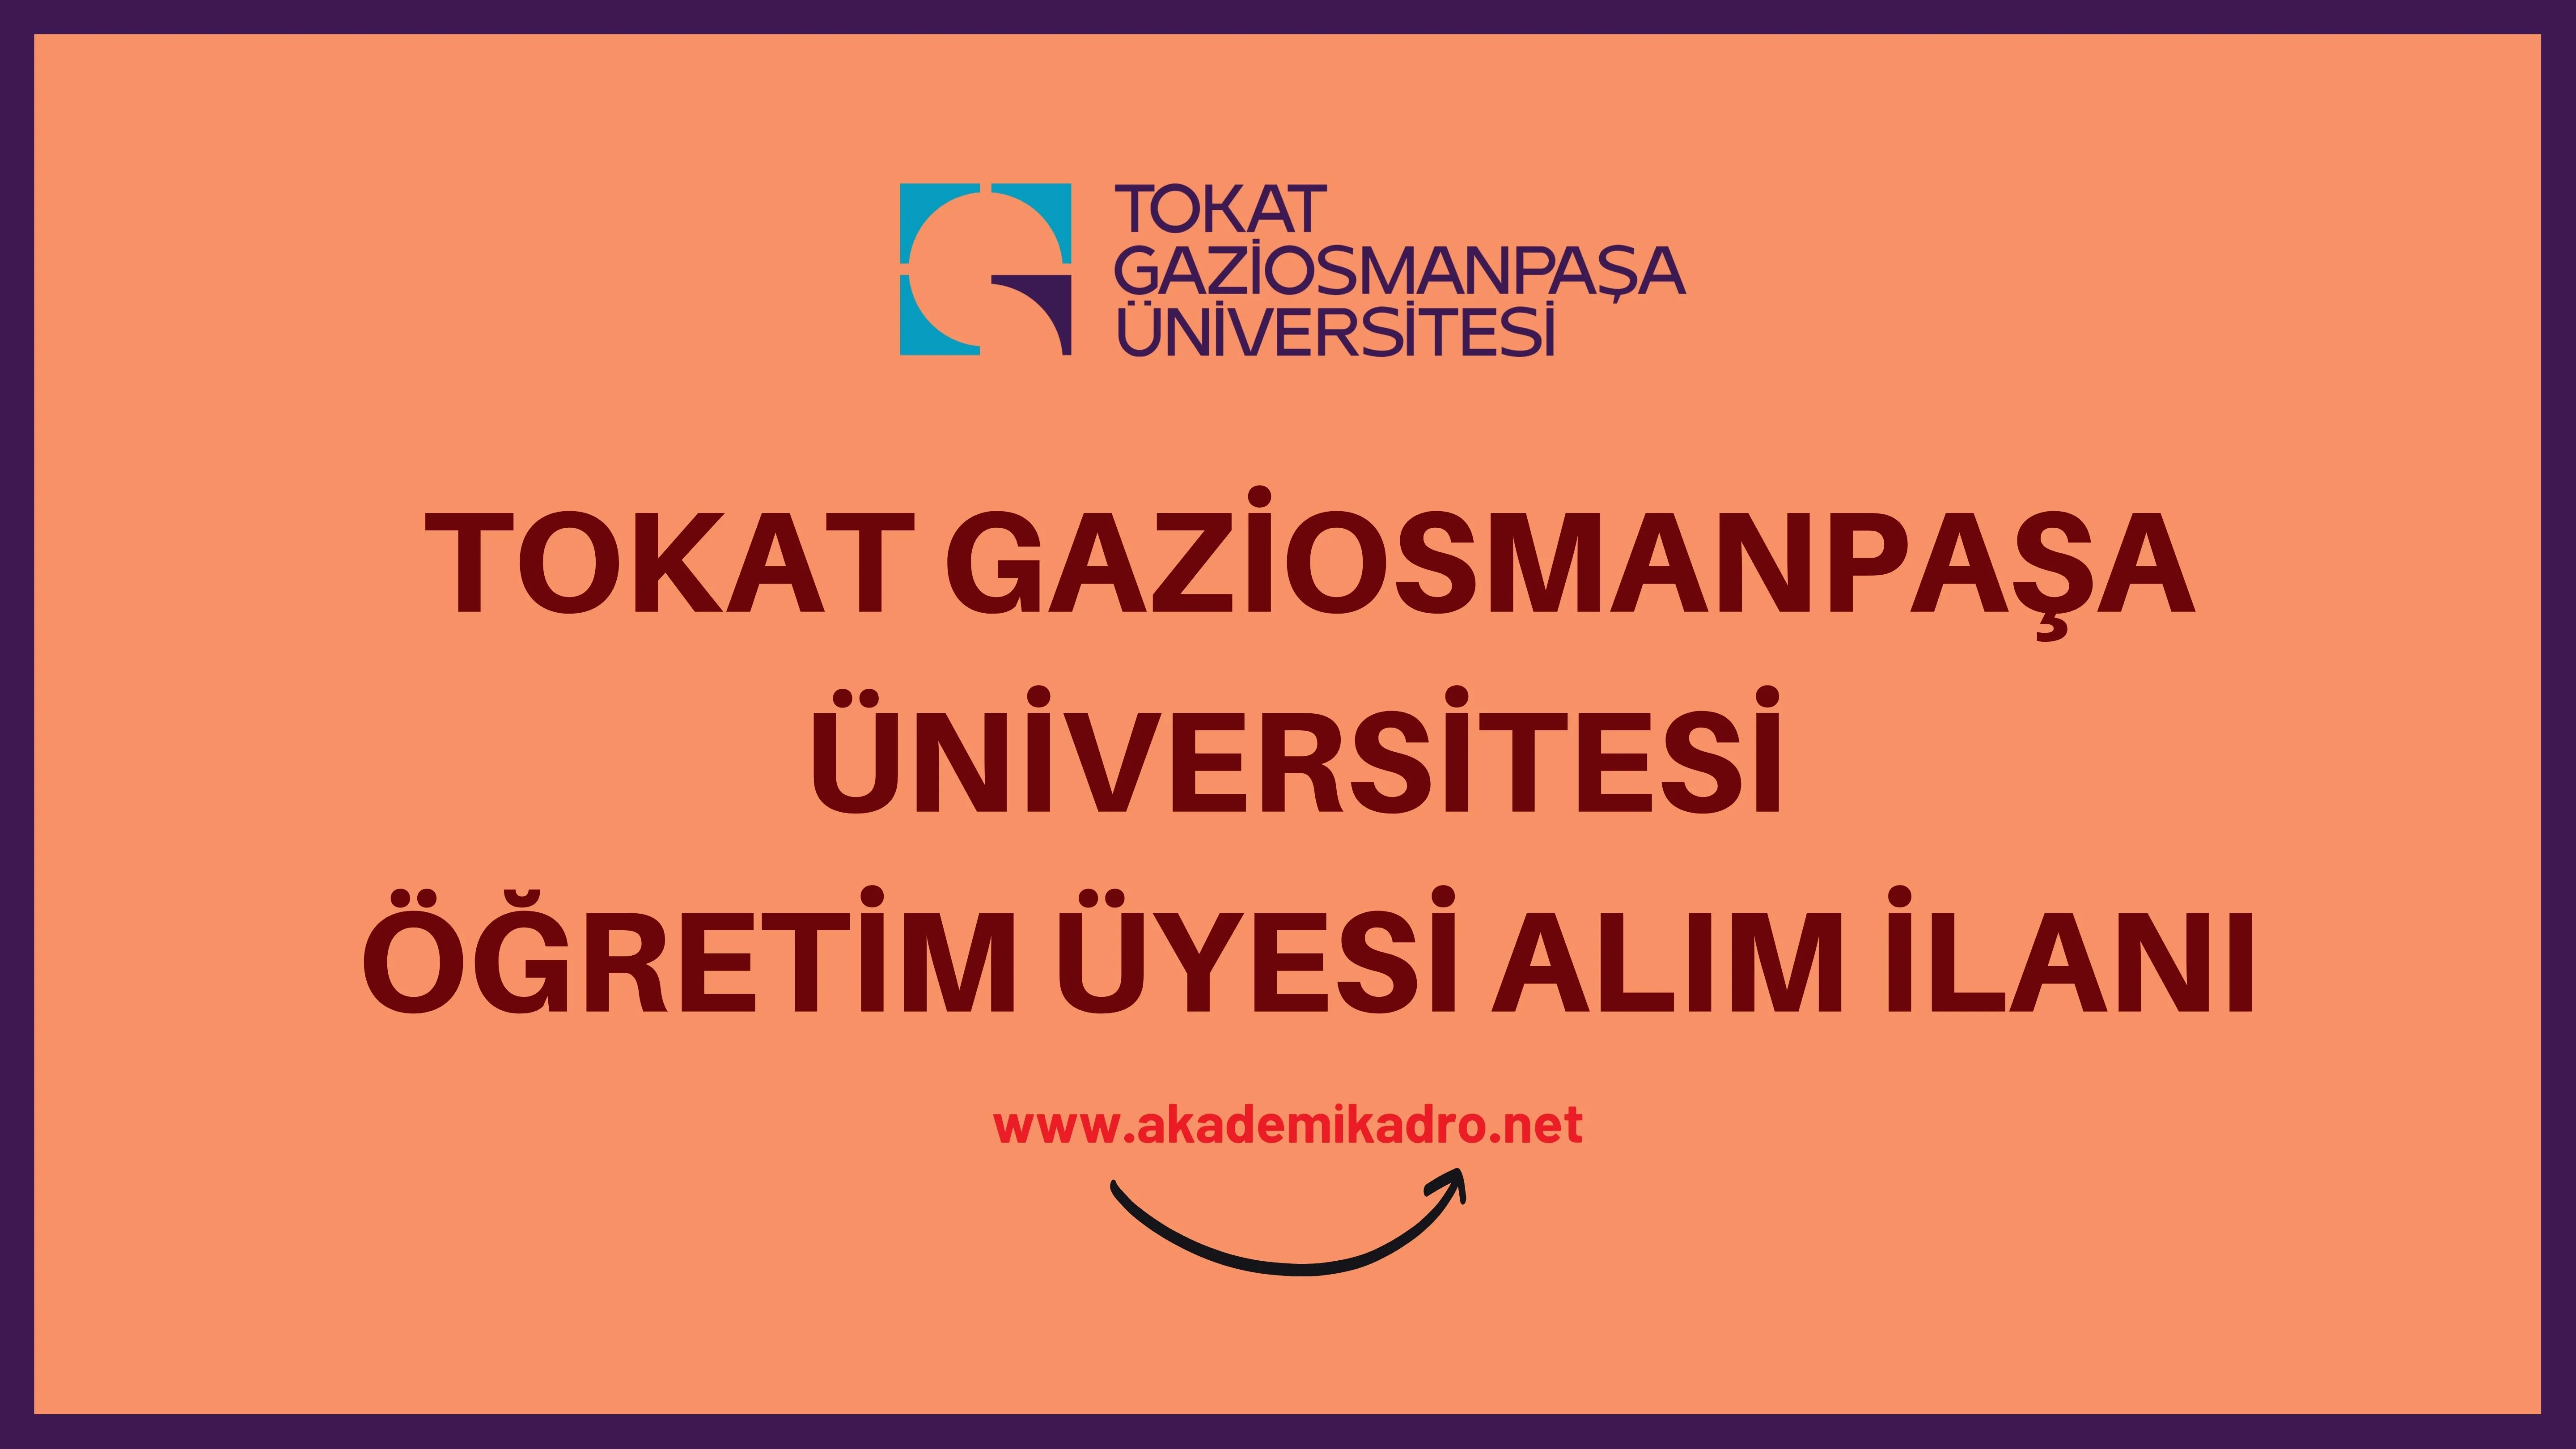 Tokat Gaziosmanpaşa Üniversitesi birçok alandan 57 Öğretim üyesi alacak. Son başvuru tarihi 16 Aralık 2022.